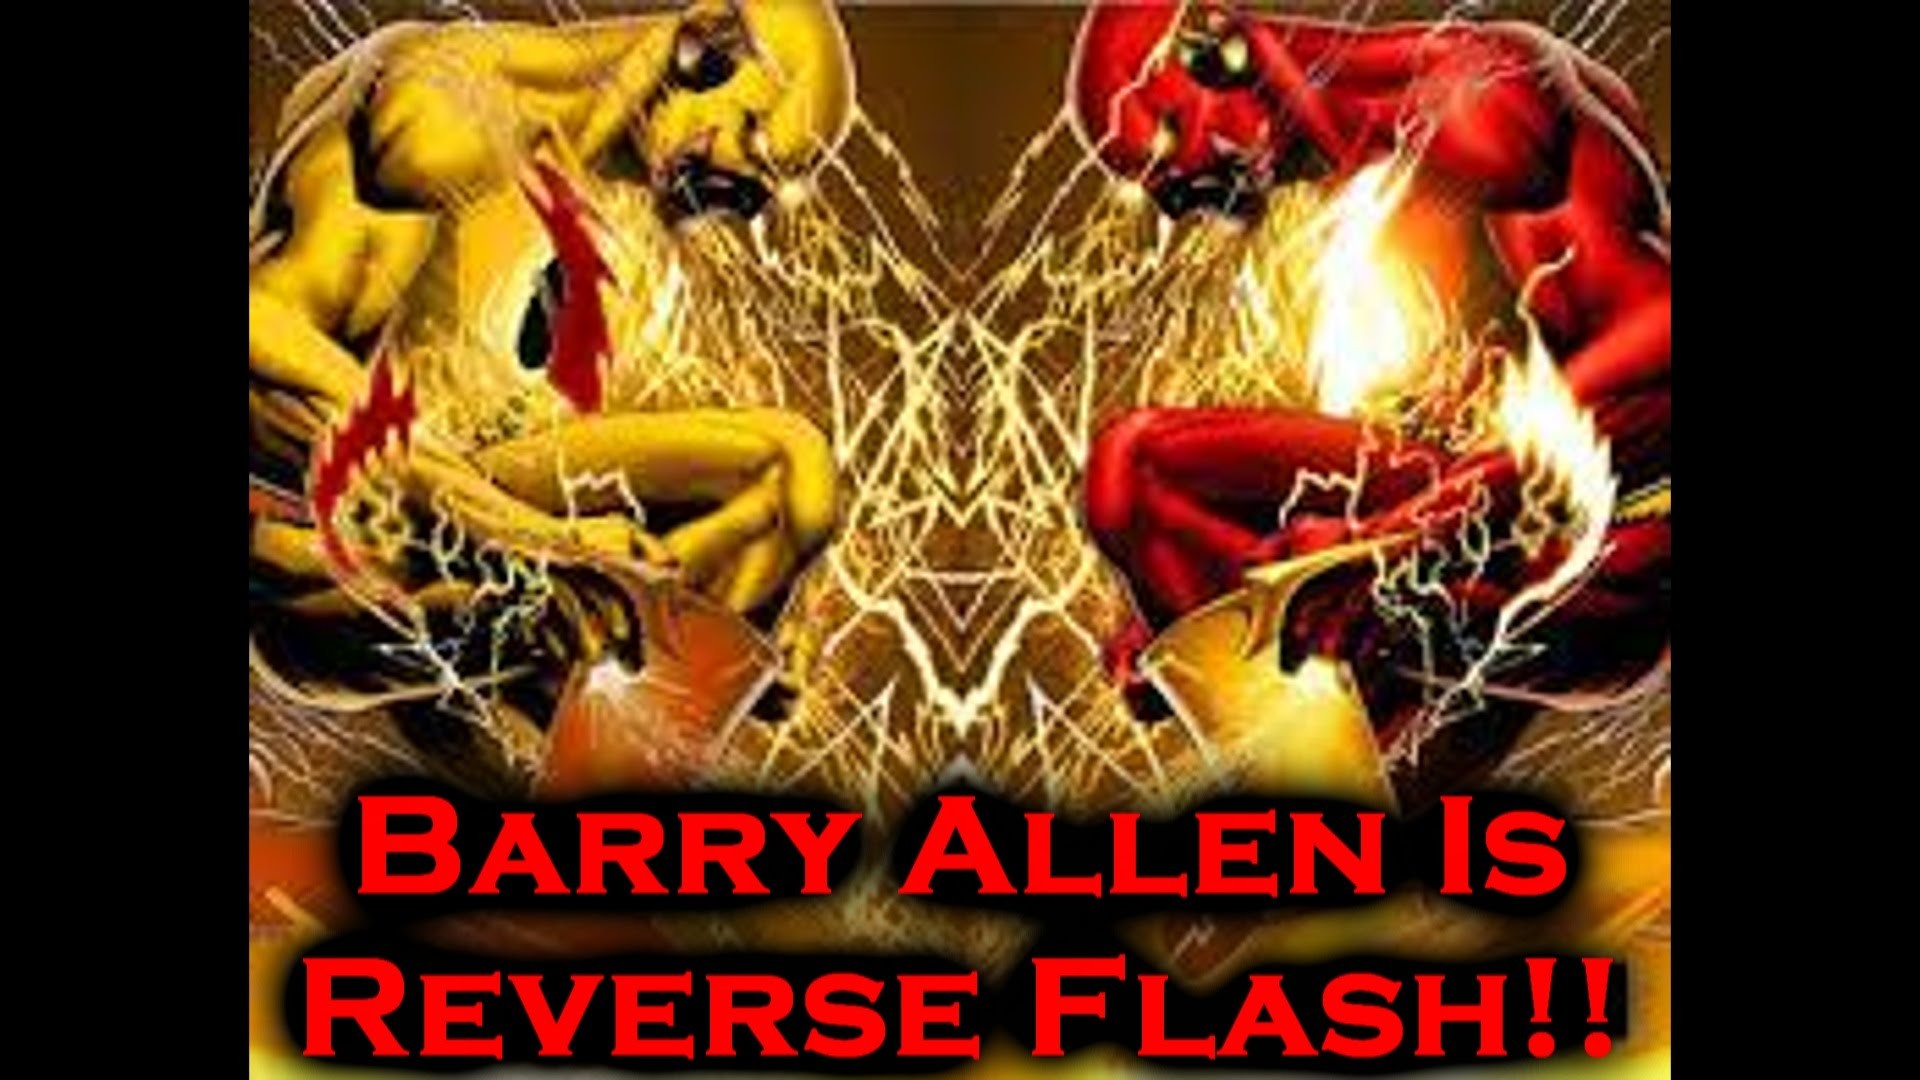 Barry Allen Wallpapers 70 Images